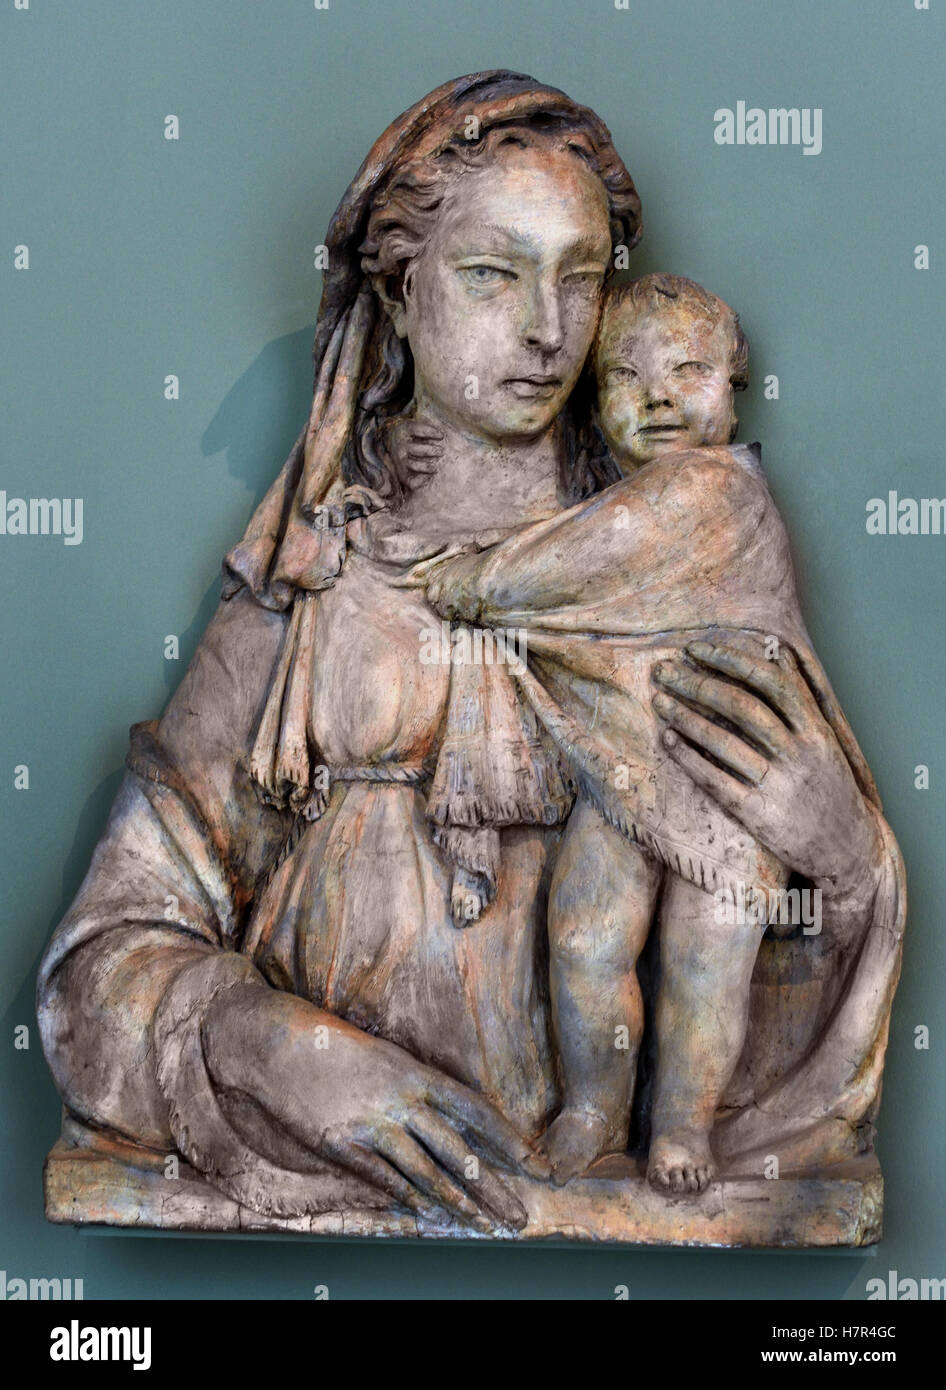 Mary with Child by Donato di Niccolò di Betto Bardi 1386 – 1466), better known as Donatello Renaissance sculptor  Florence. Italy Italian Stock Photo